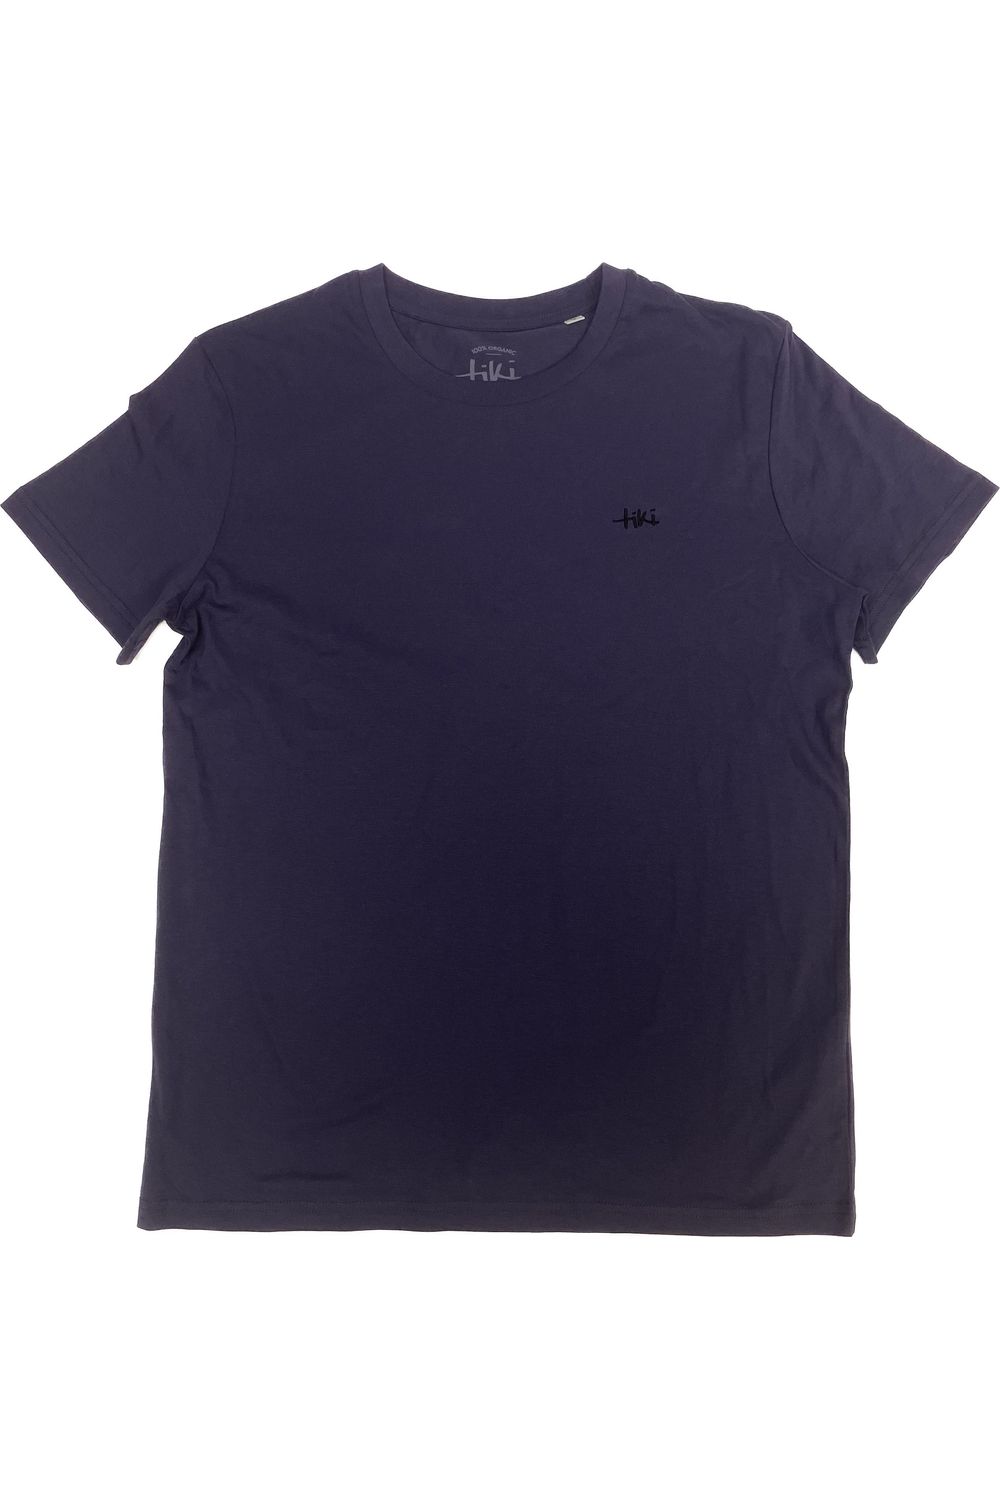 Tiki Unisex Classic Short Sleeve T-Shirt Indigo Hush